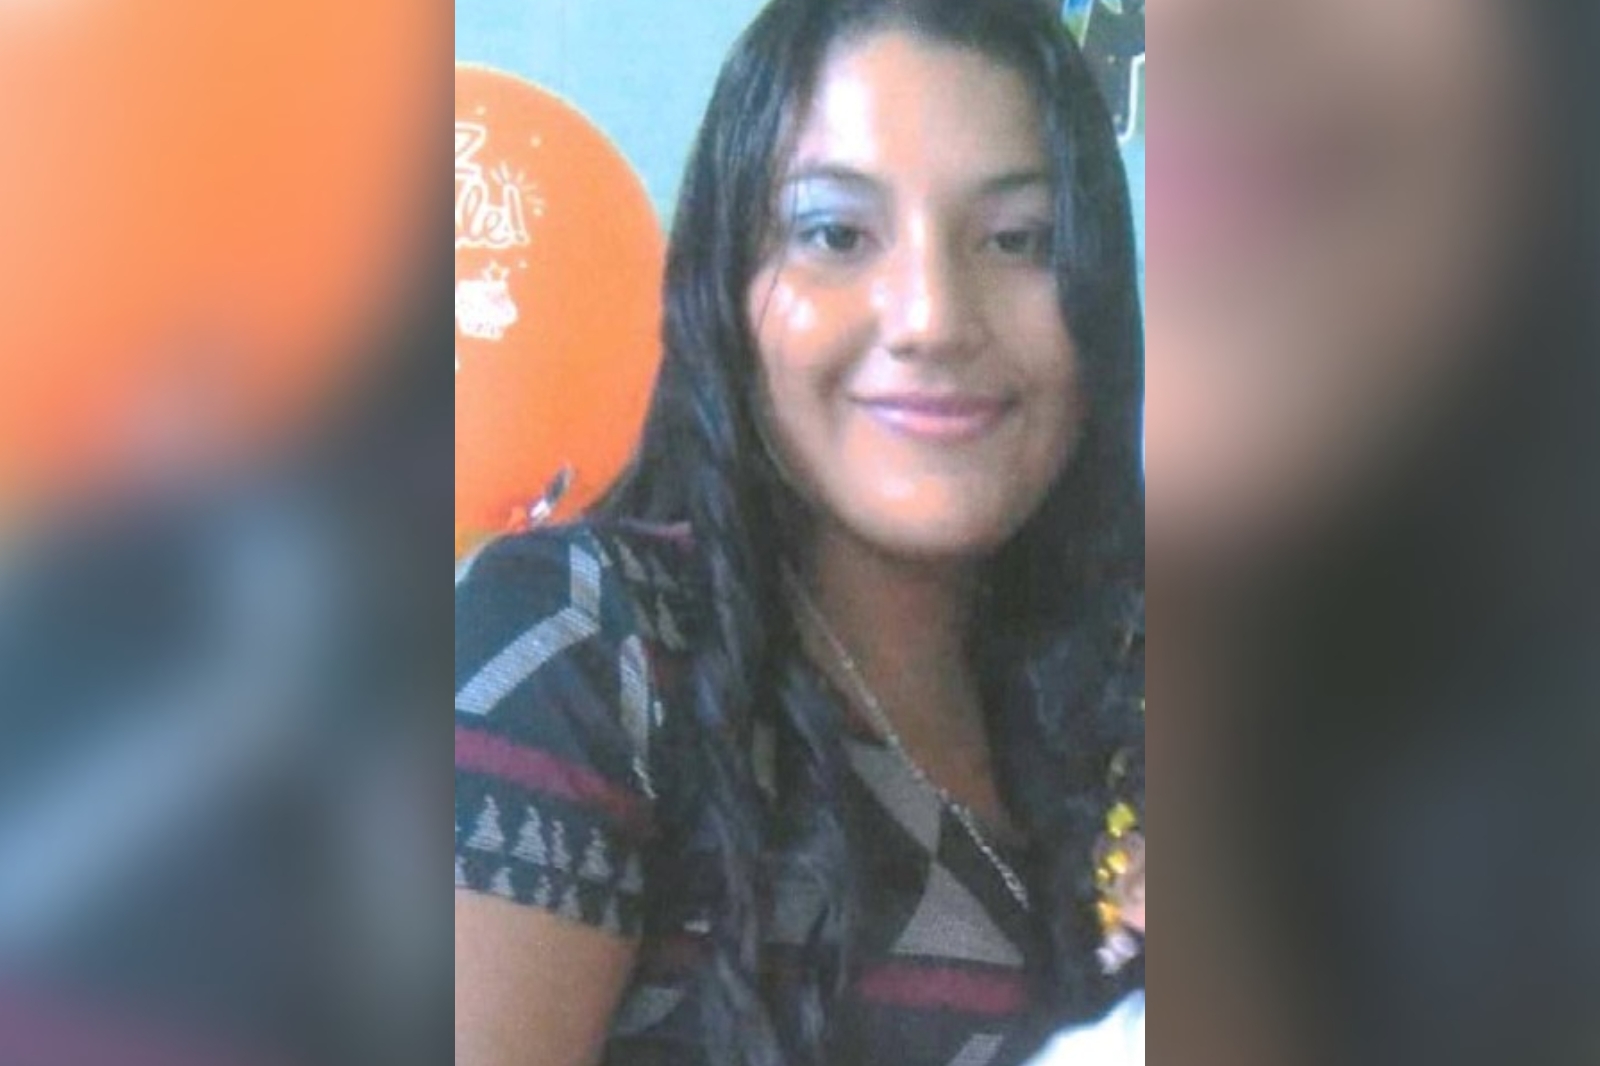 Alerta Ámber Quintana Roo: Reportan desaparición de Jade Aracel Ramos Lagunes en Cozumel